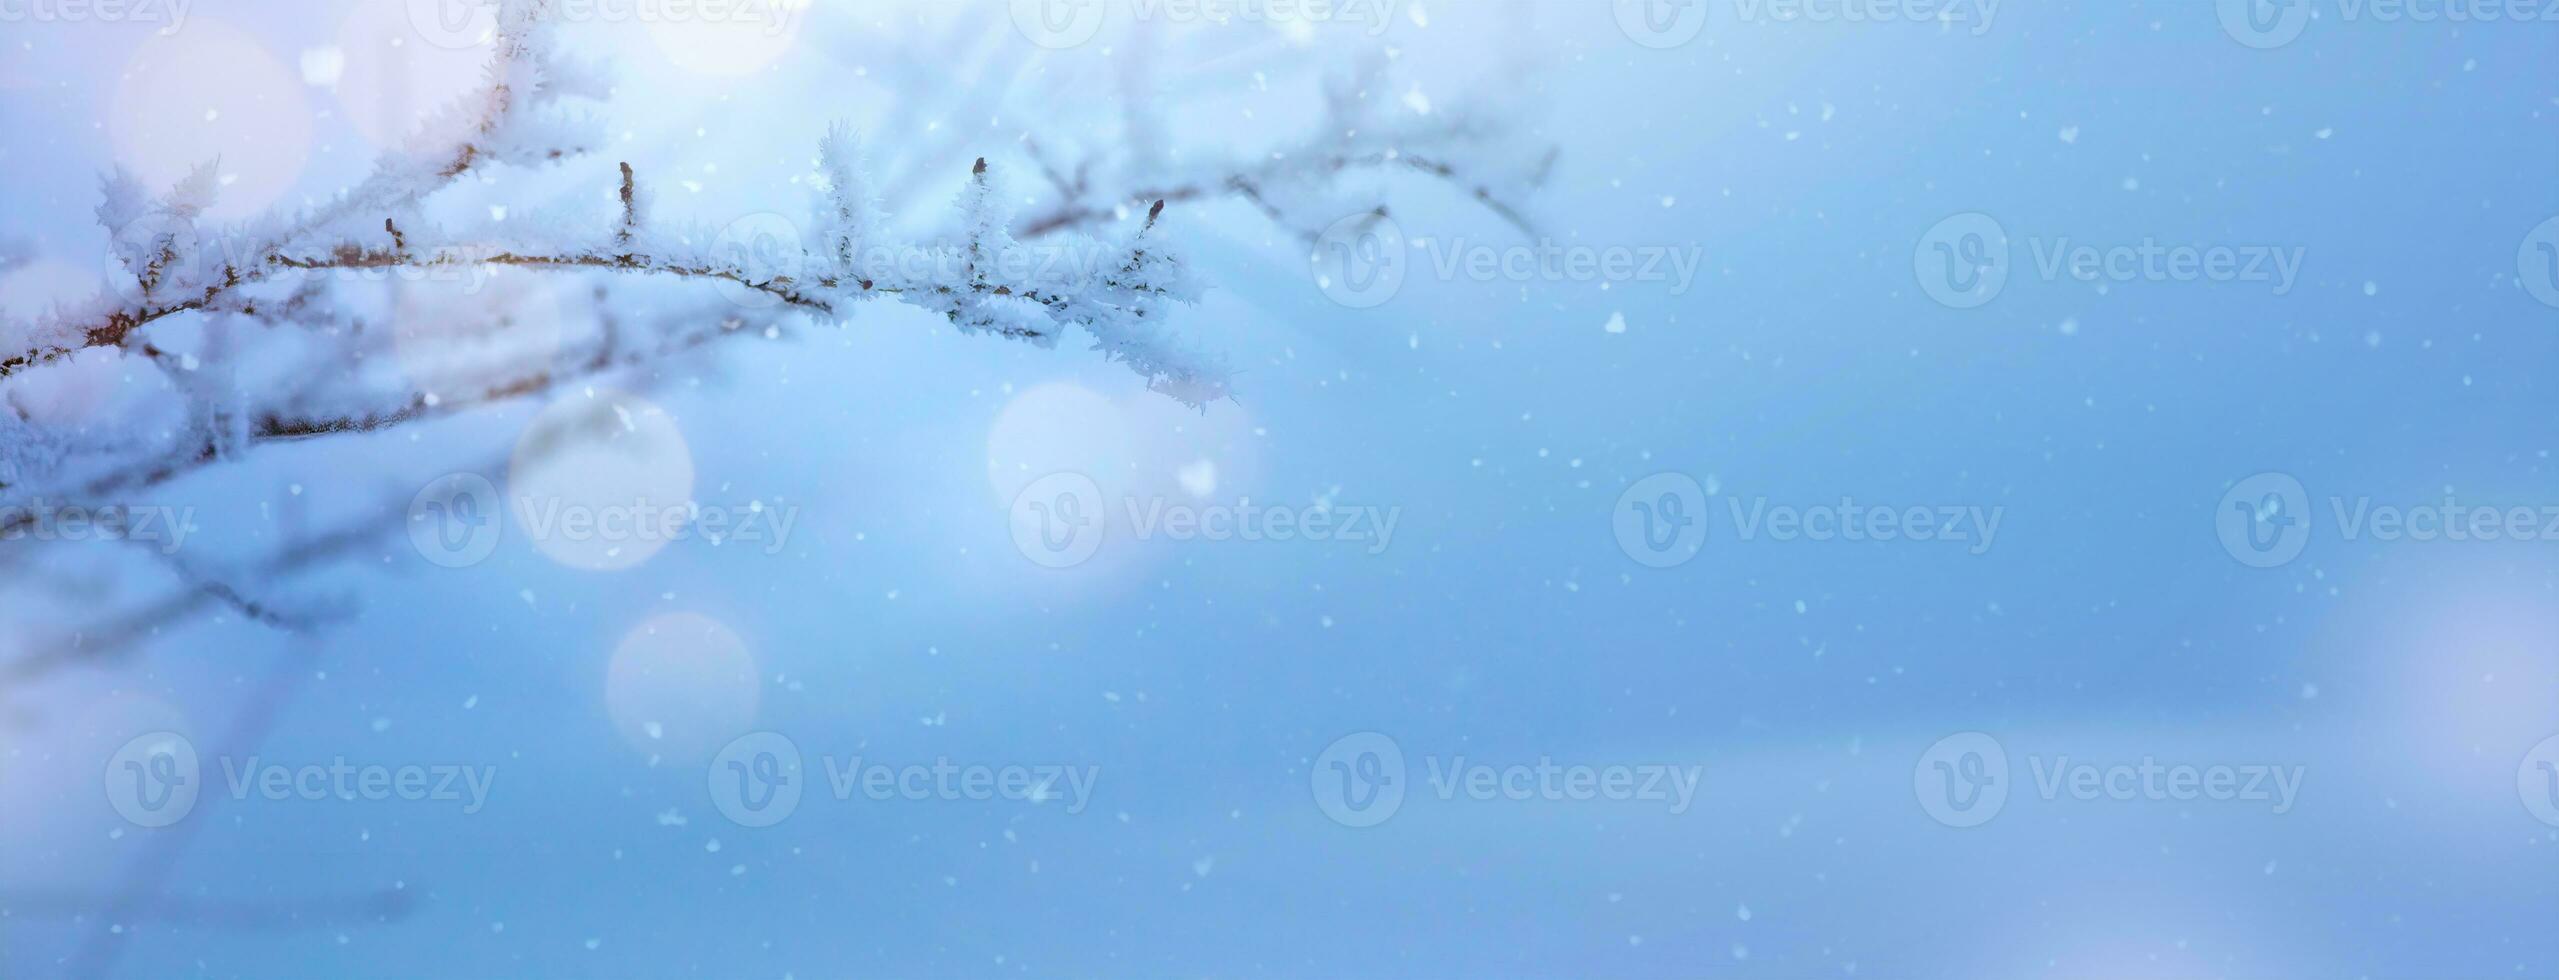 vinter- bakgrund med snöig och iced grenar av träd på snöig blå himmel bakgrund. jul och vinter- begrepp. foto